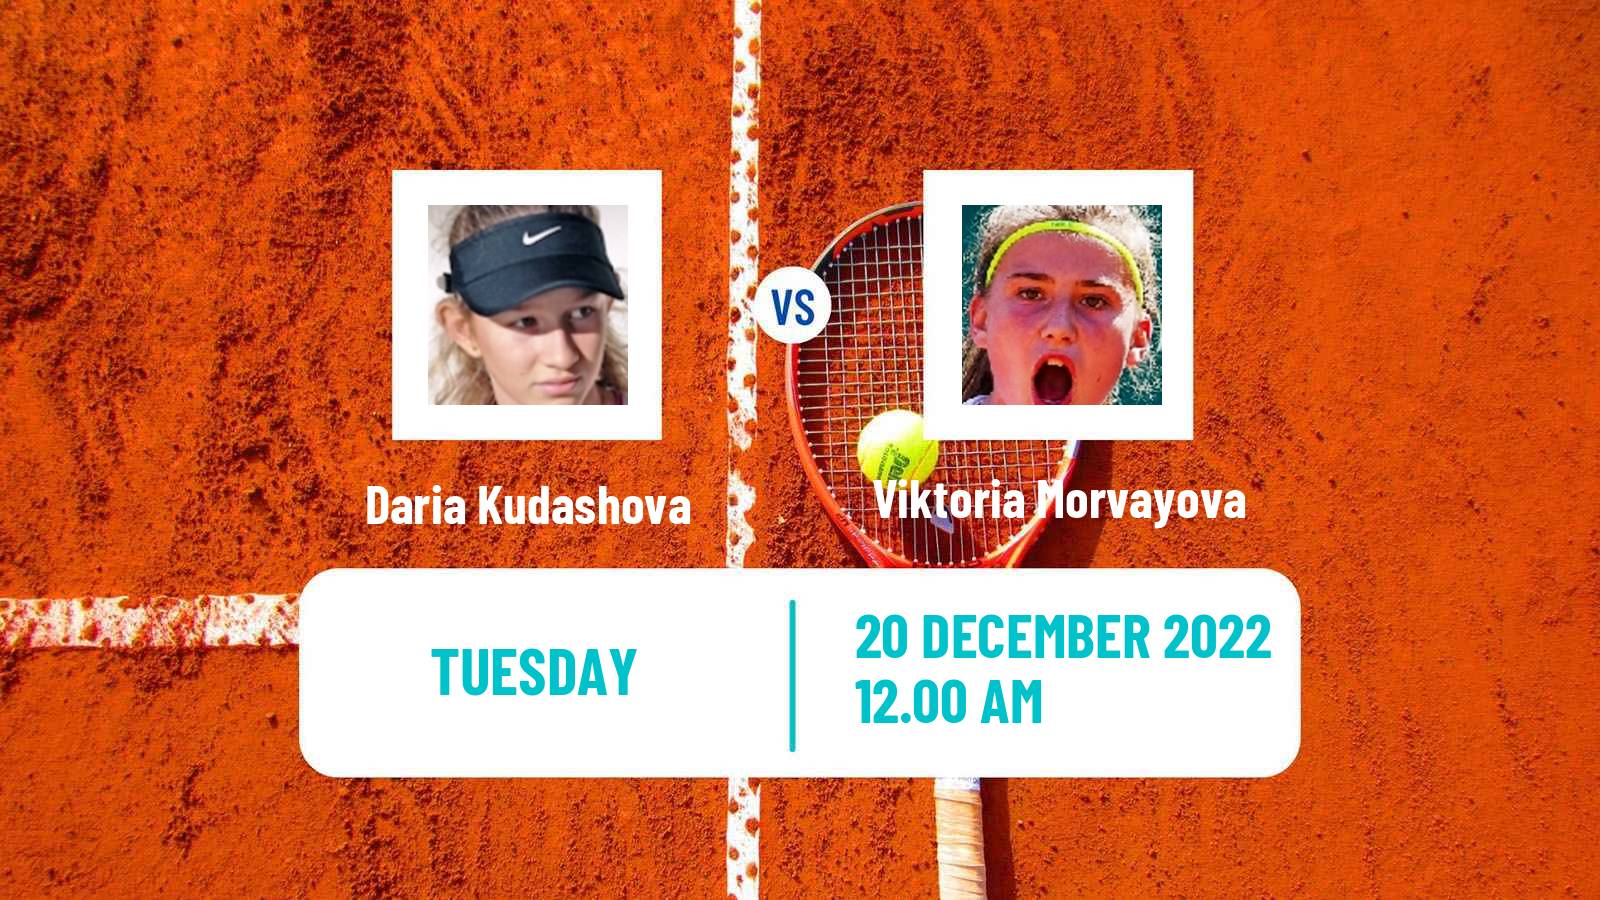 Tennis ITF Tournaments Daria Kudashova - Viktoria Morvayova